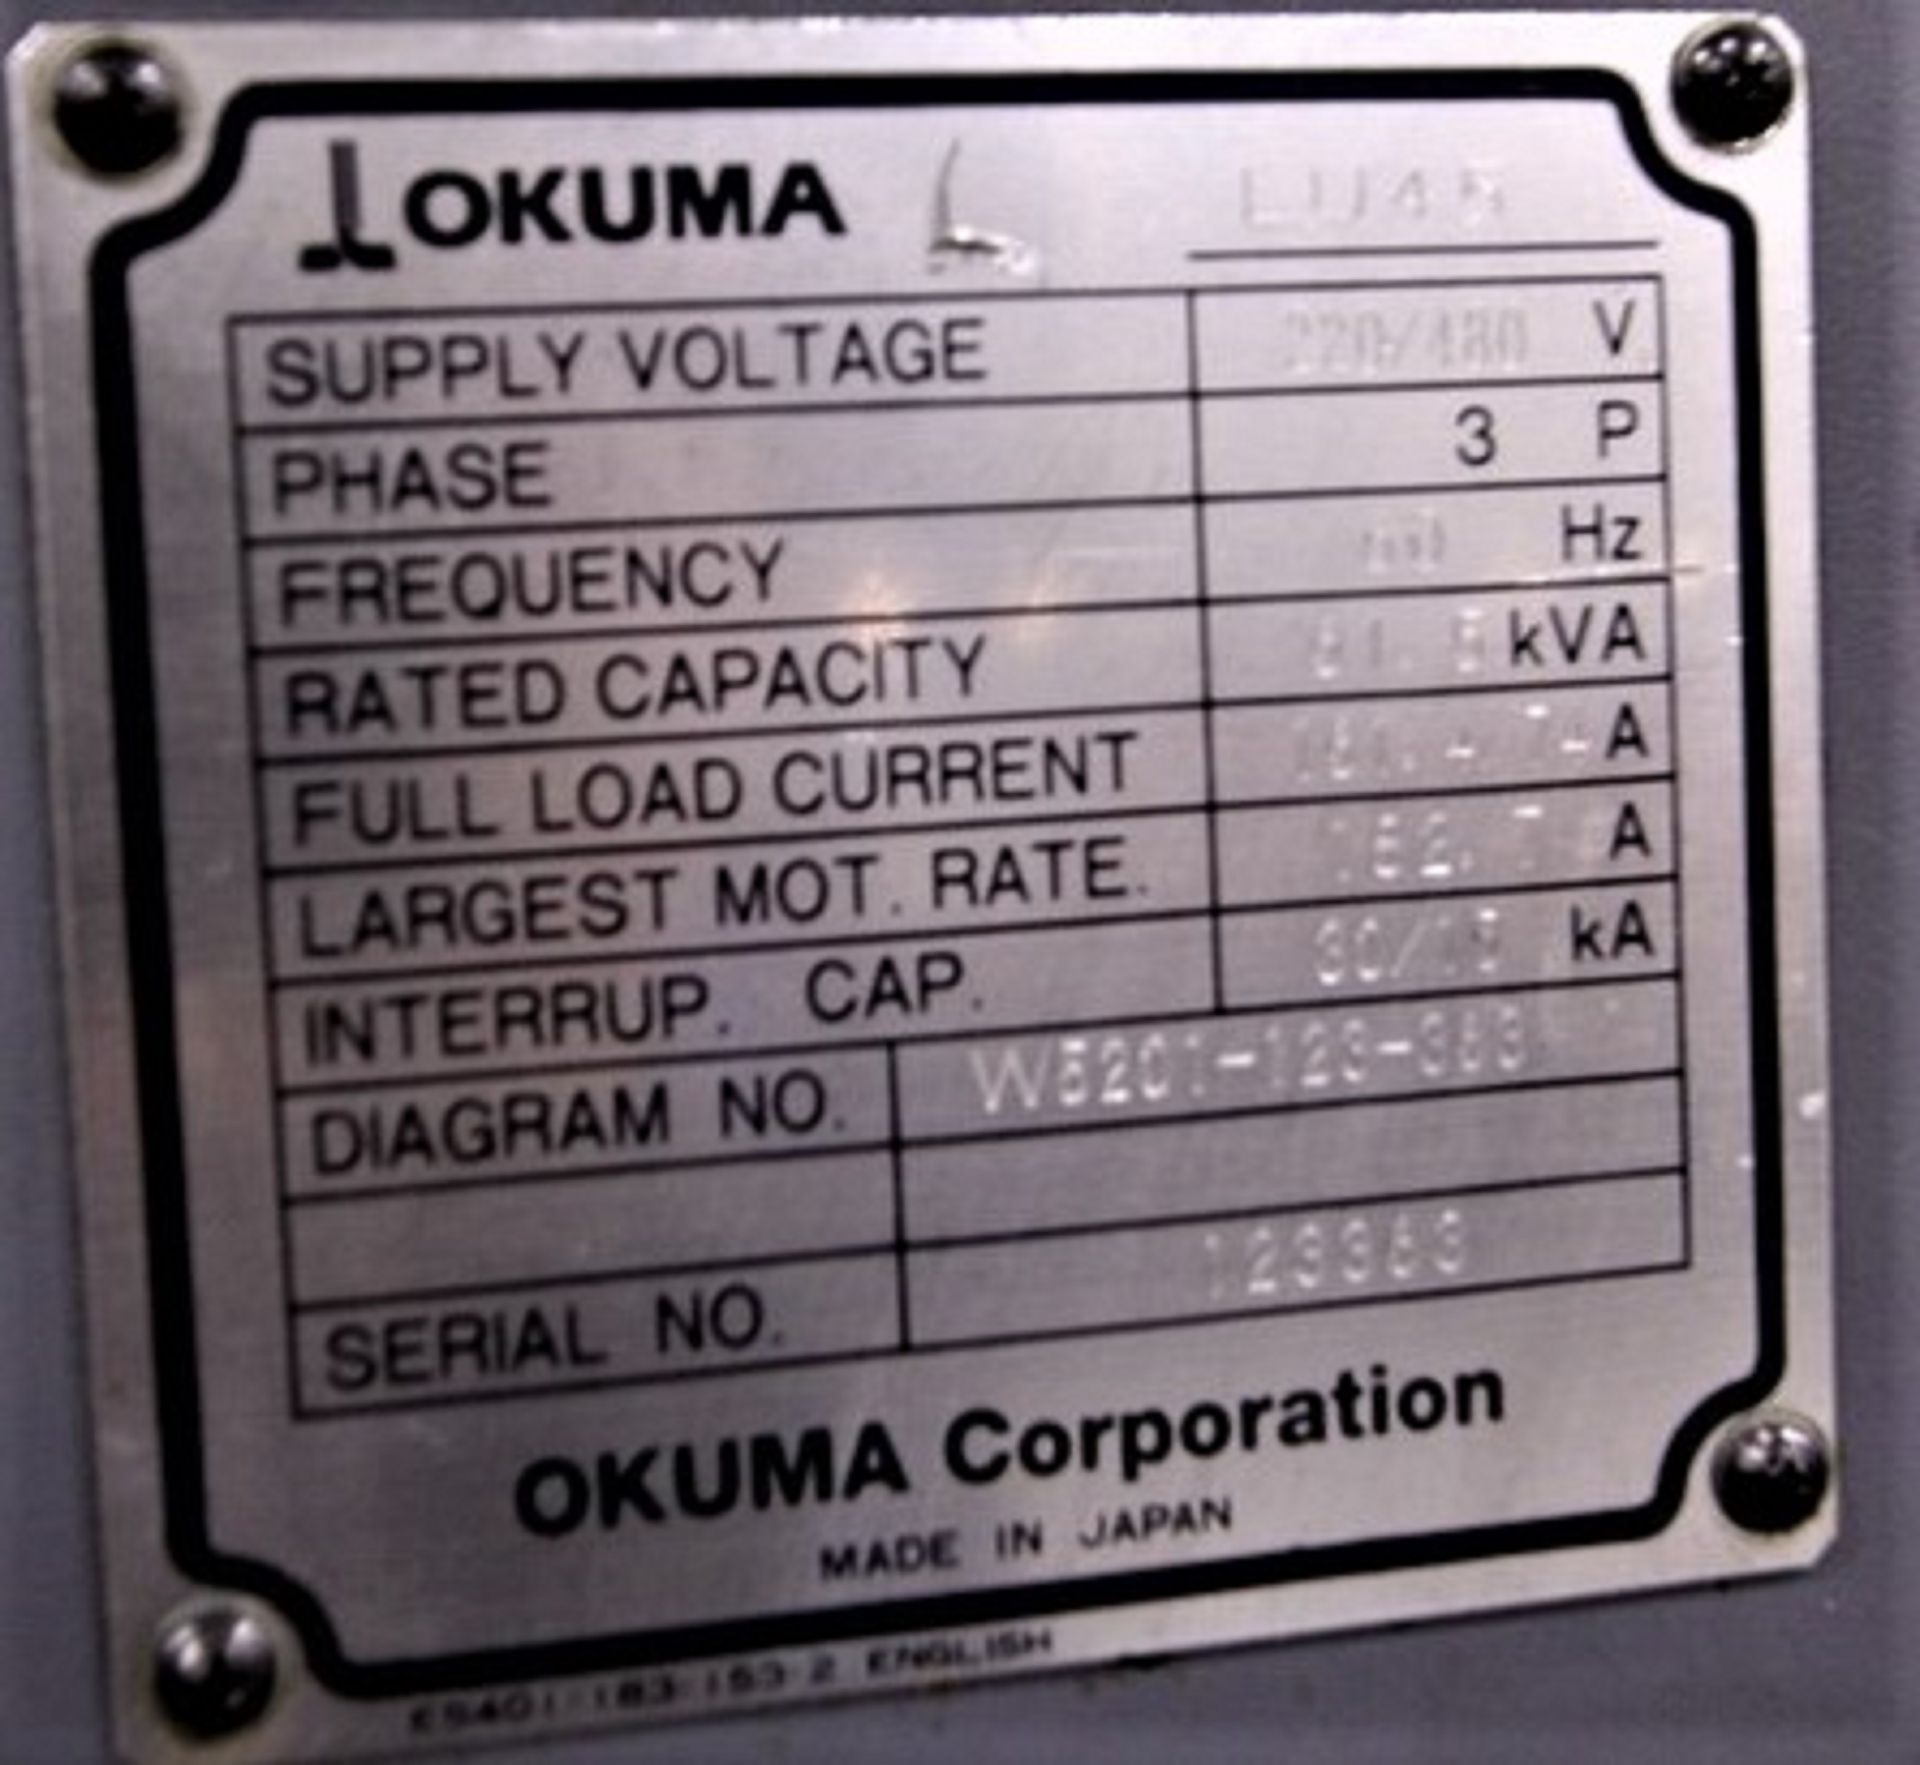 25.6" X 80" OKUMA IMPACT LU-45 CNC 4-AZIS TURNING CENTER LATHE - Image 12 of 12